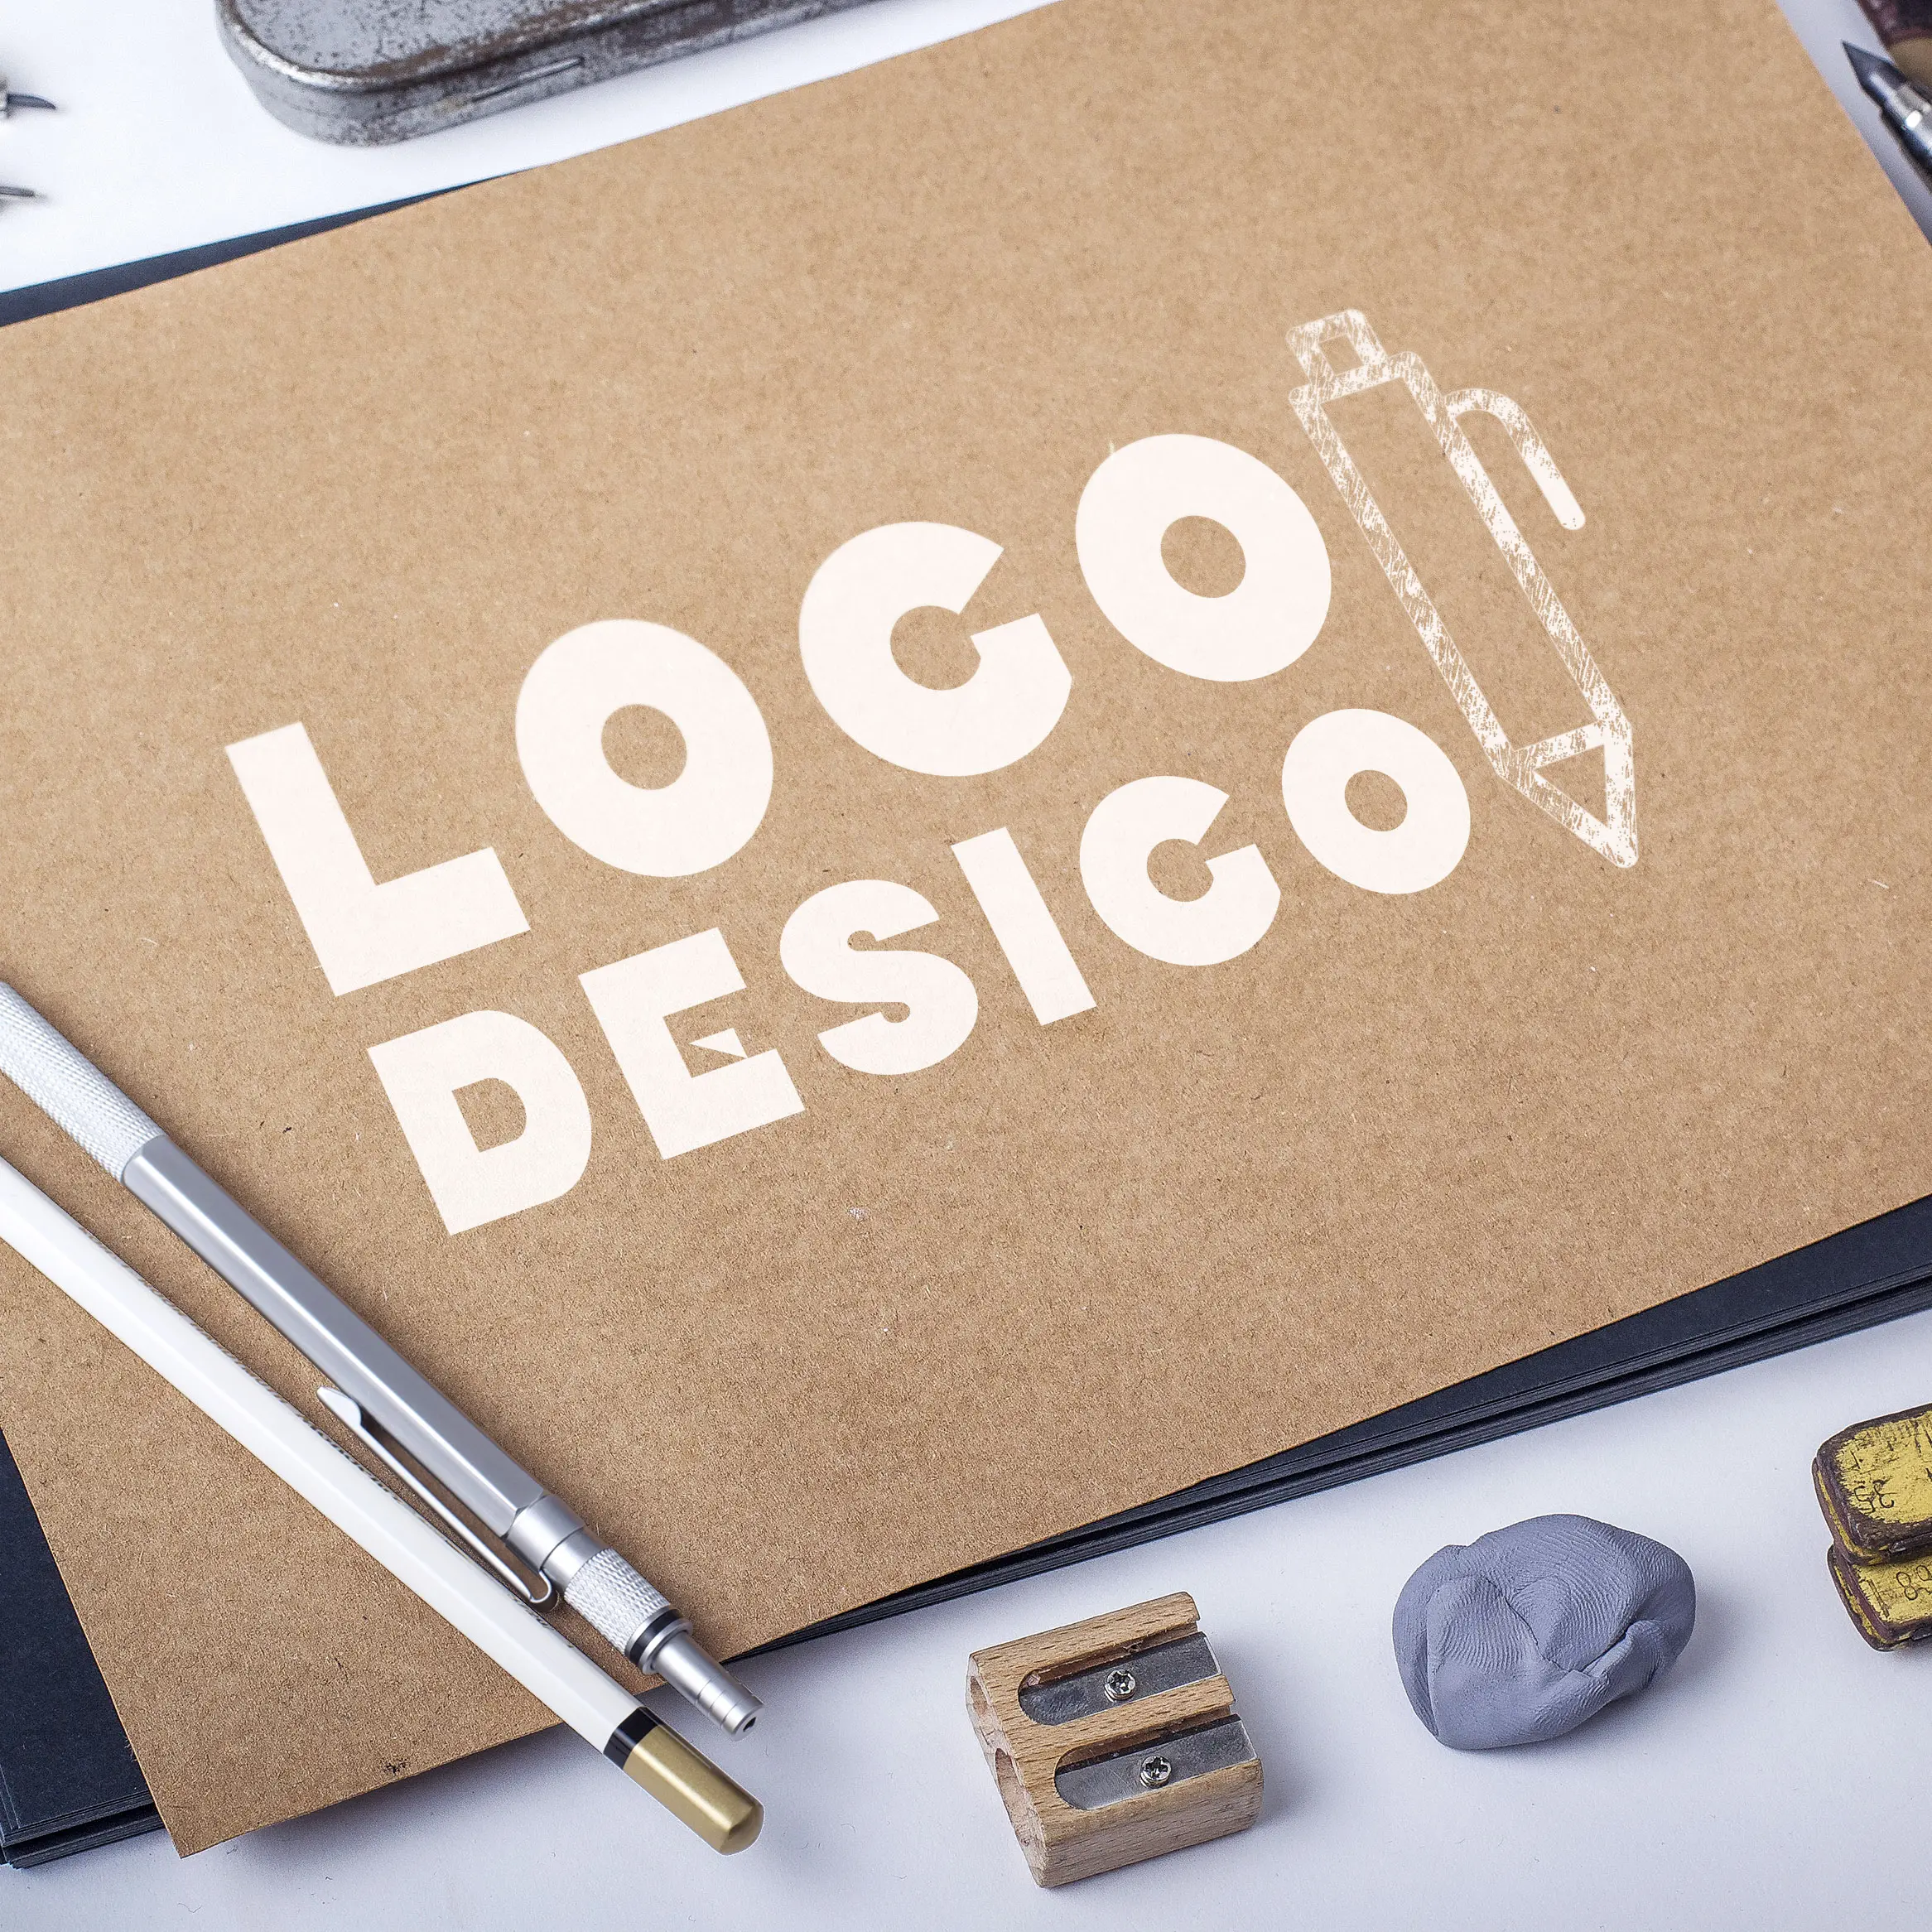 Momei пользовательский брендинг услуги графического дизайна креативный векторный дизайн логотипа услуги графический